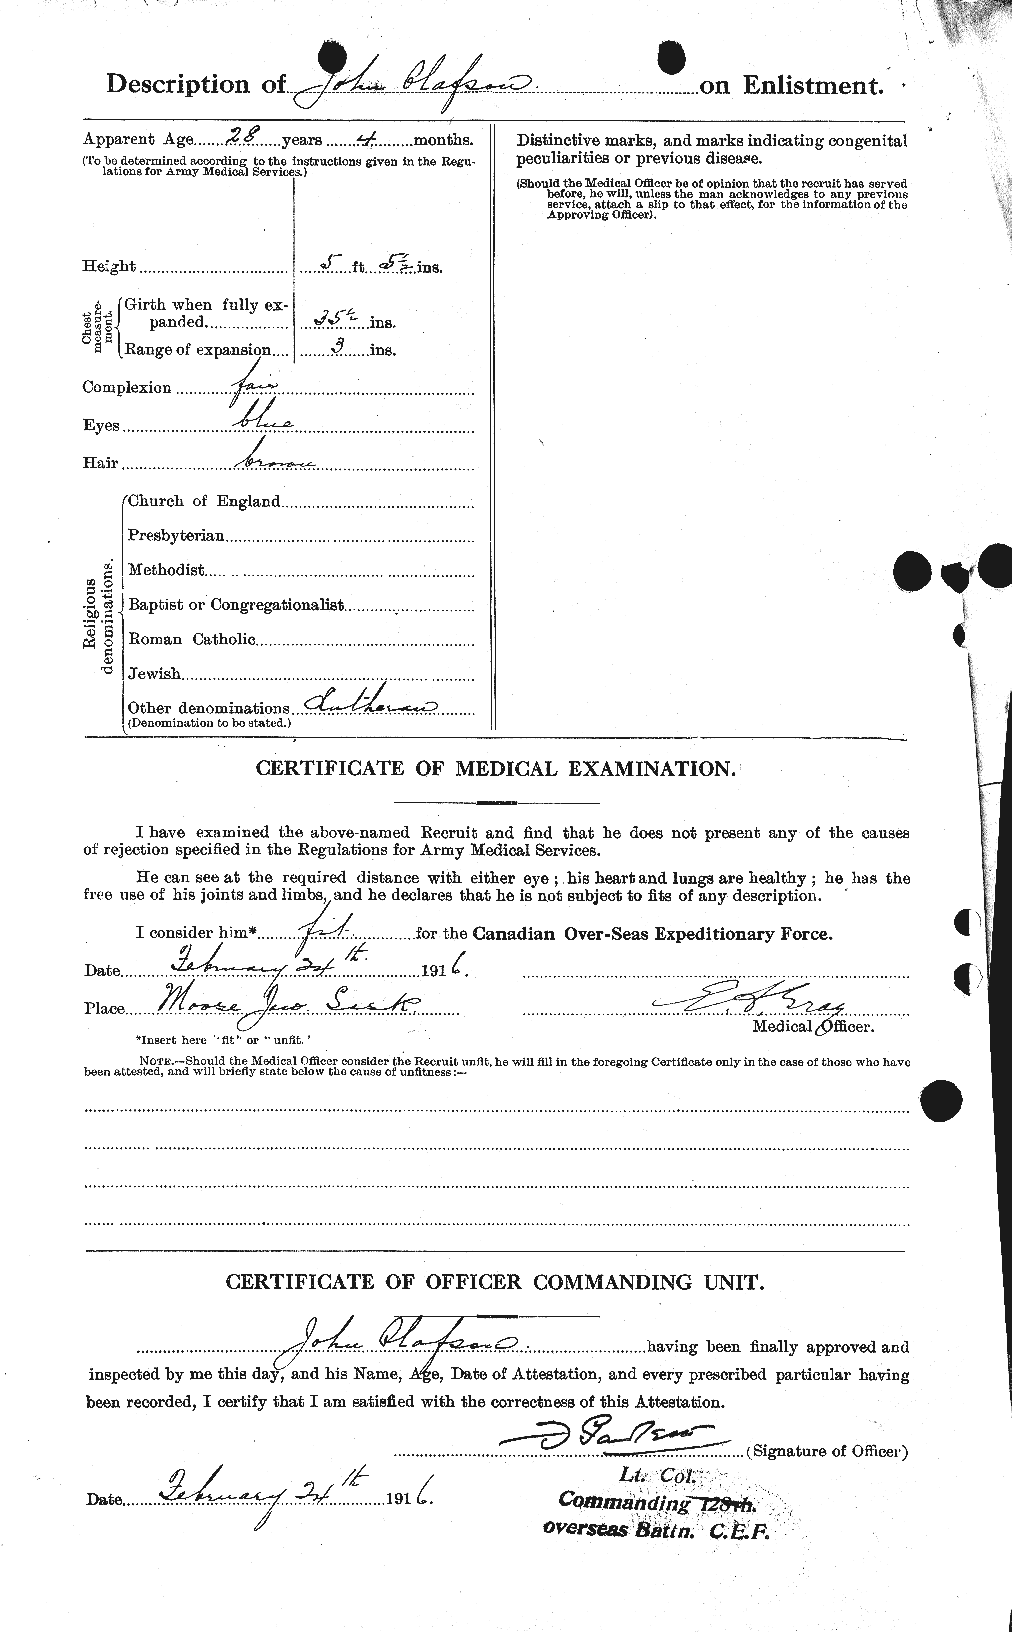 Dossiers du Personnel de la Première Guerre mondiale - CEC 555724b